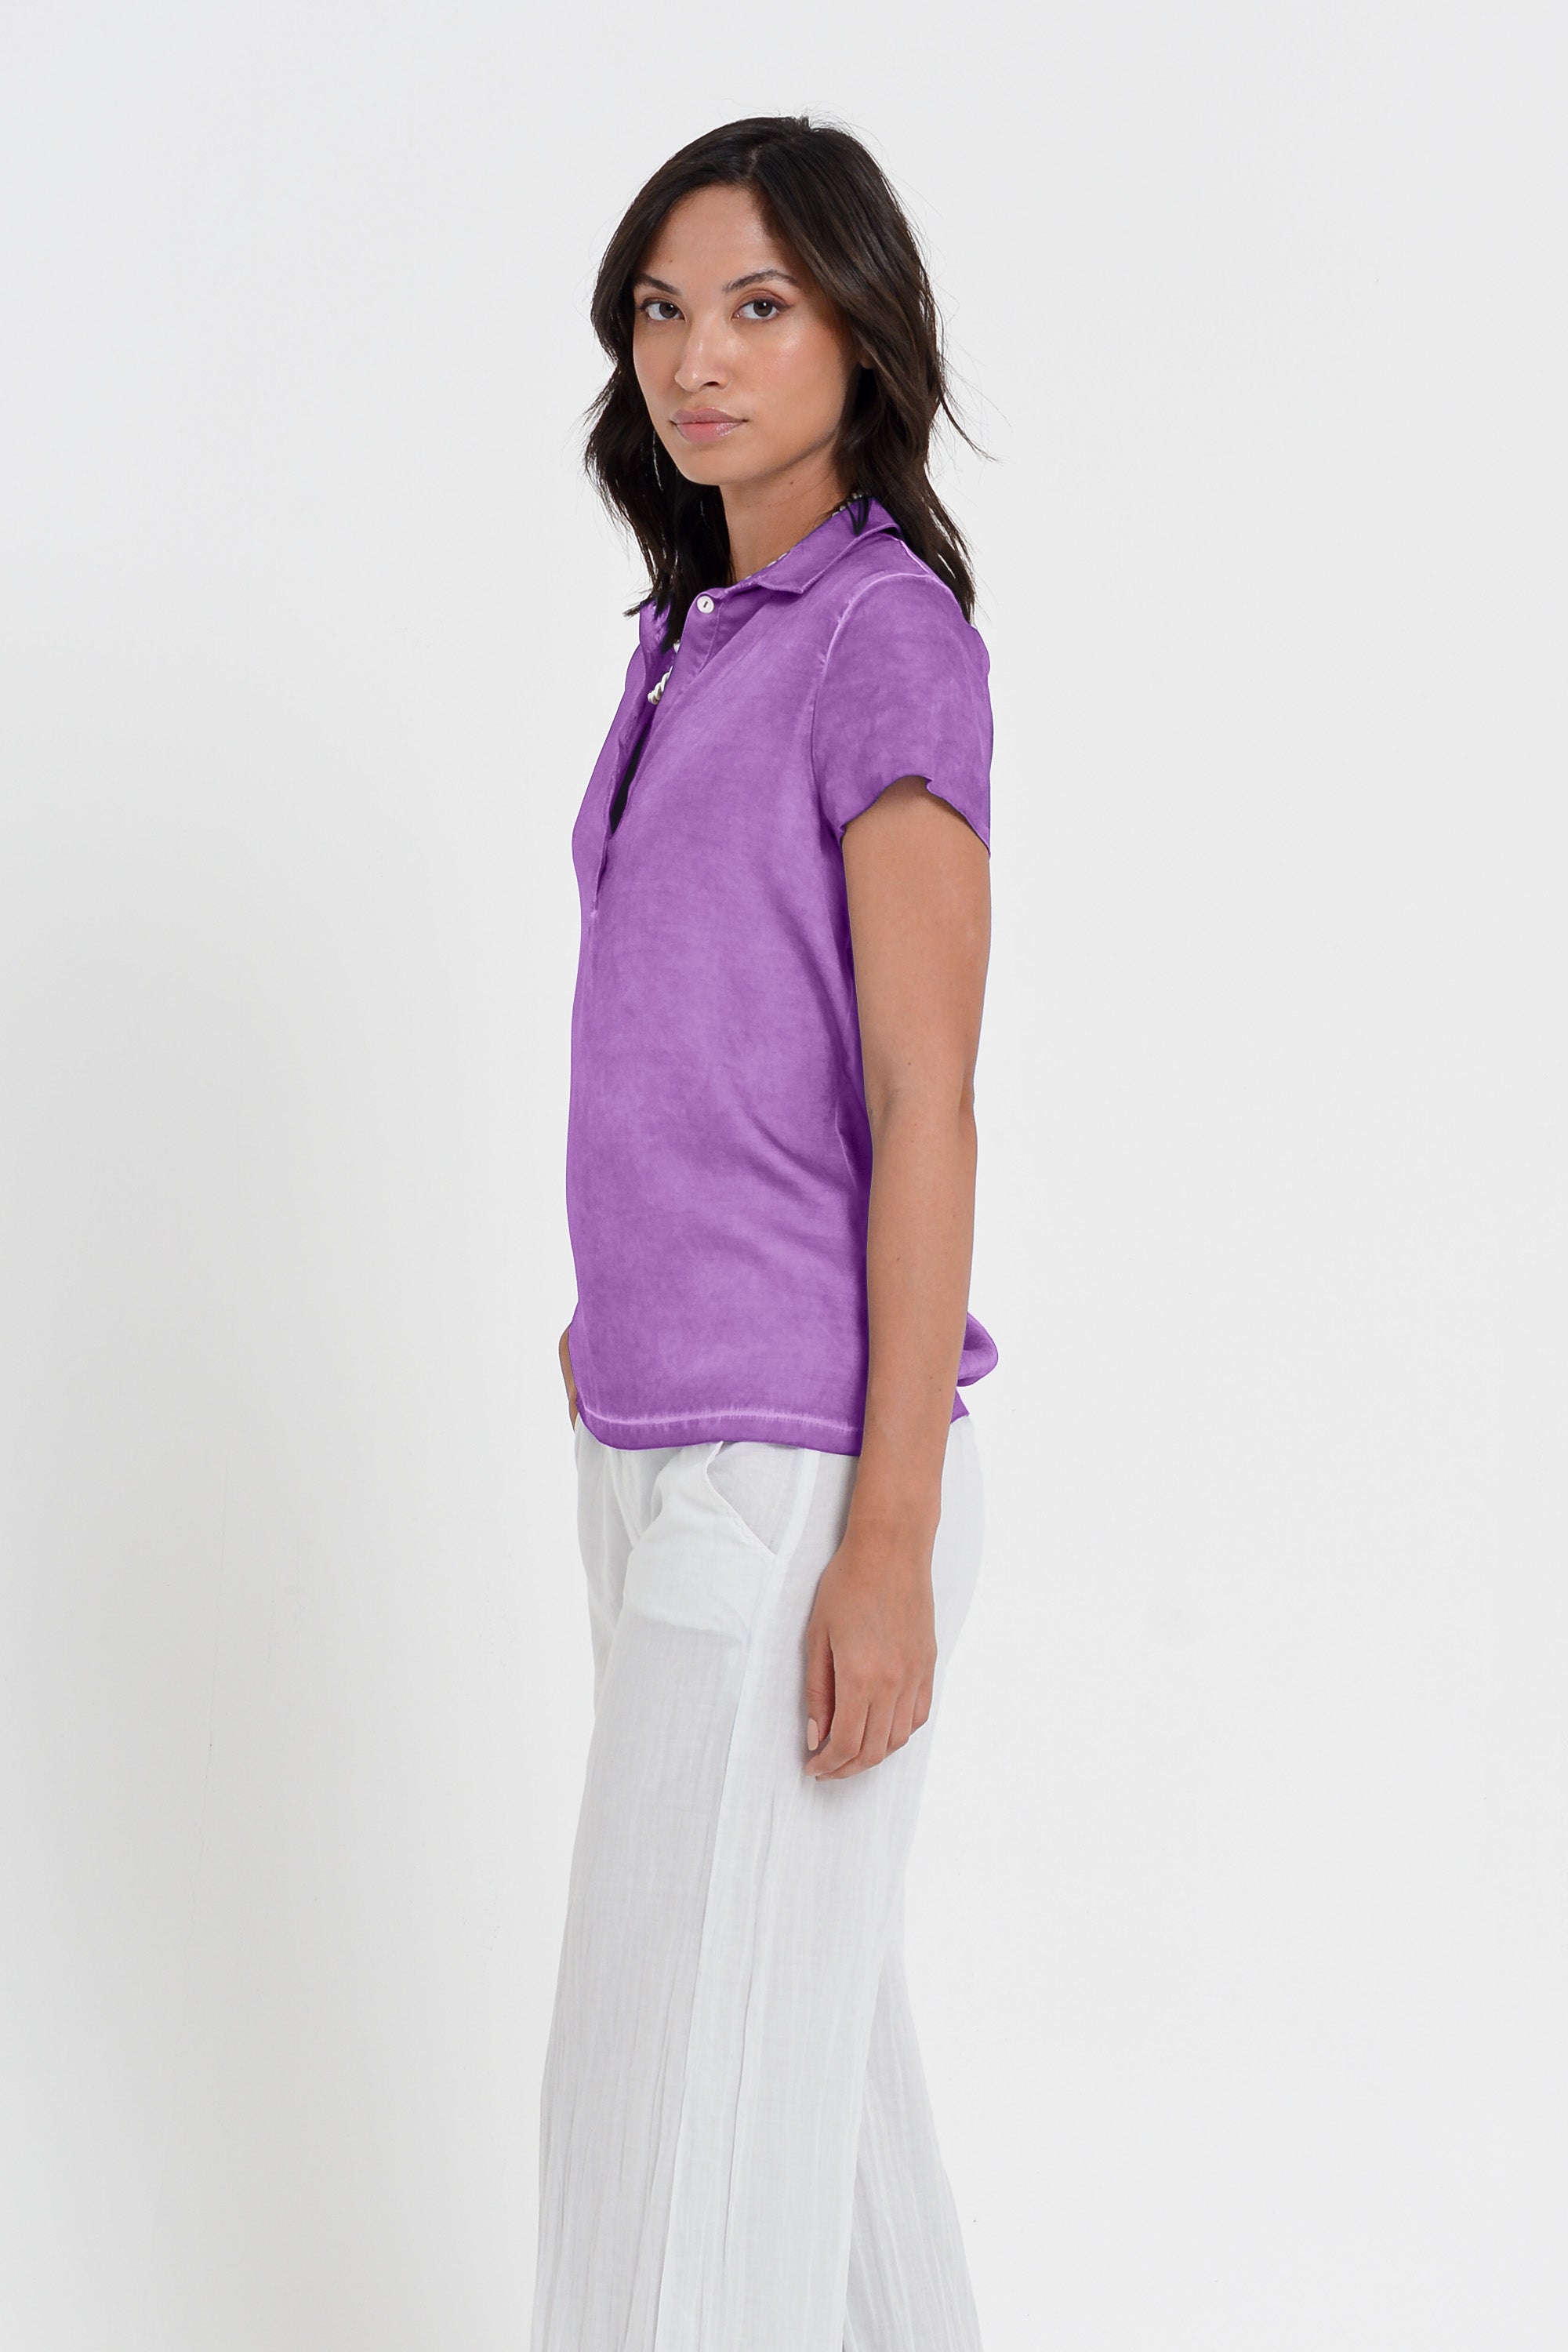 Bellera Polo - Women Stretchy Polo Shirt - Morado